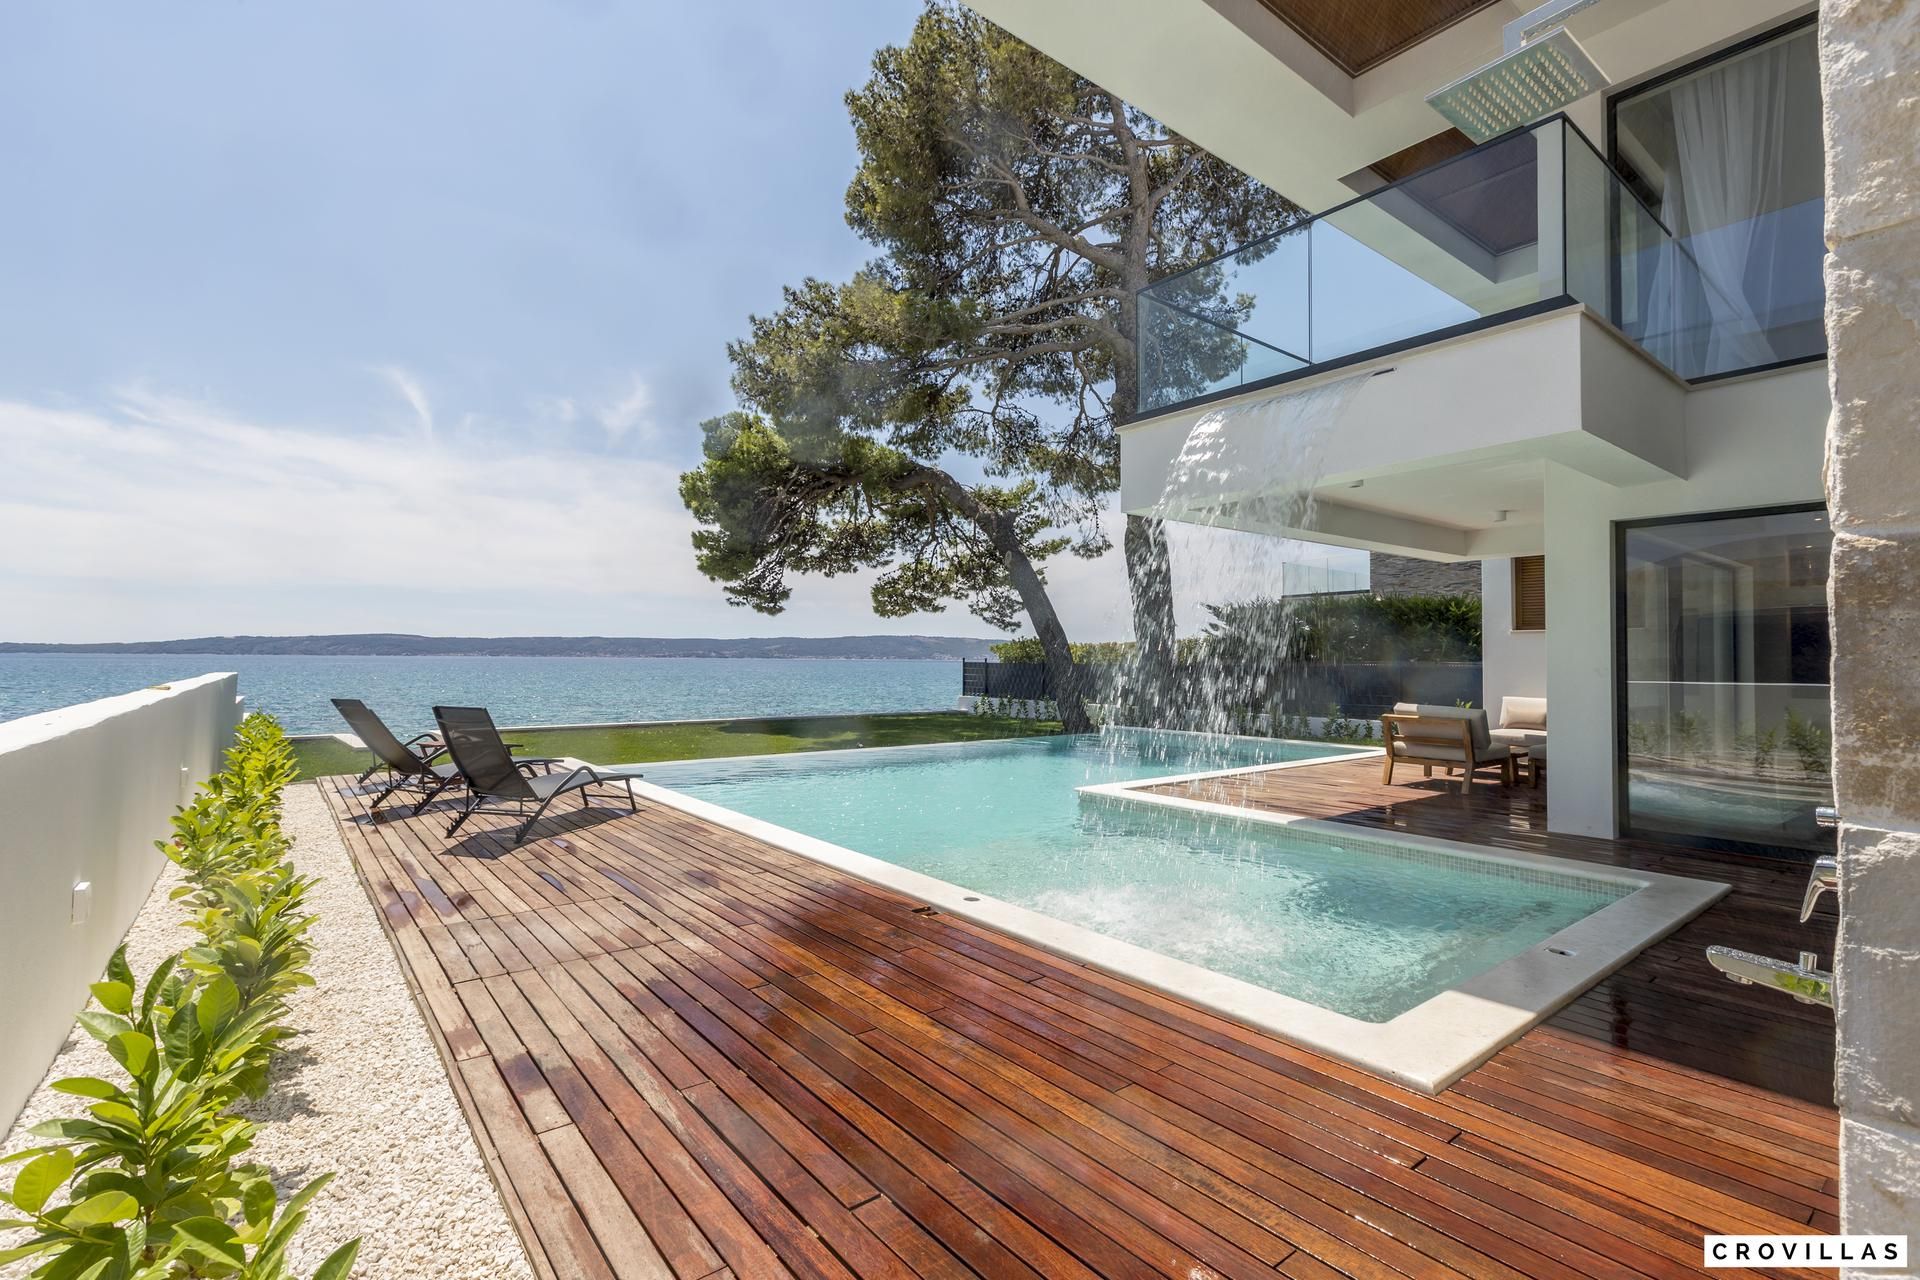 Eksklusive luksusvillaer i Kroatien til leje – Fantastiske ferievillaer ved havet